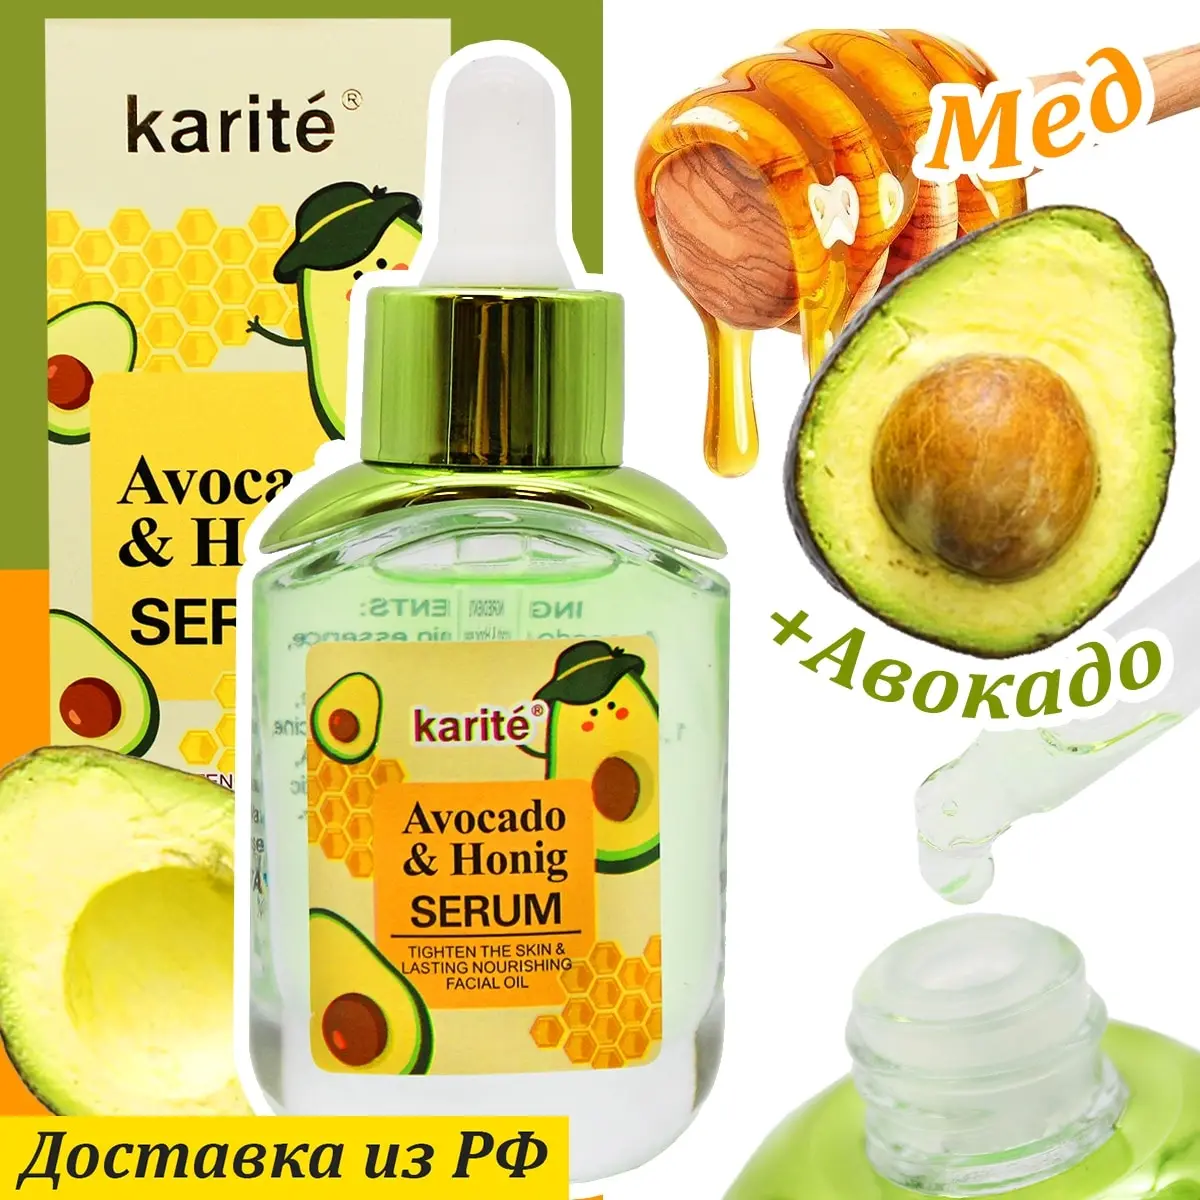 KARITE Сыворотка с Медом и экстрактом Авокадо Avocado & Honig Serum 30мл 68052-47AV | Красота